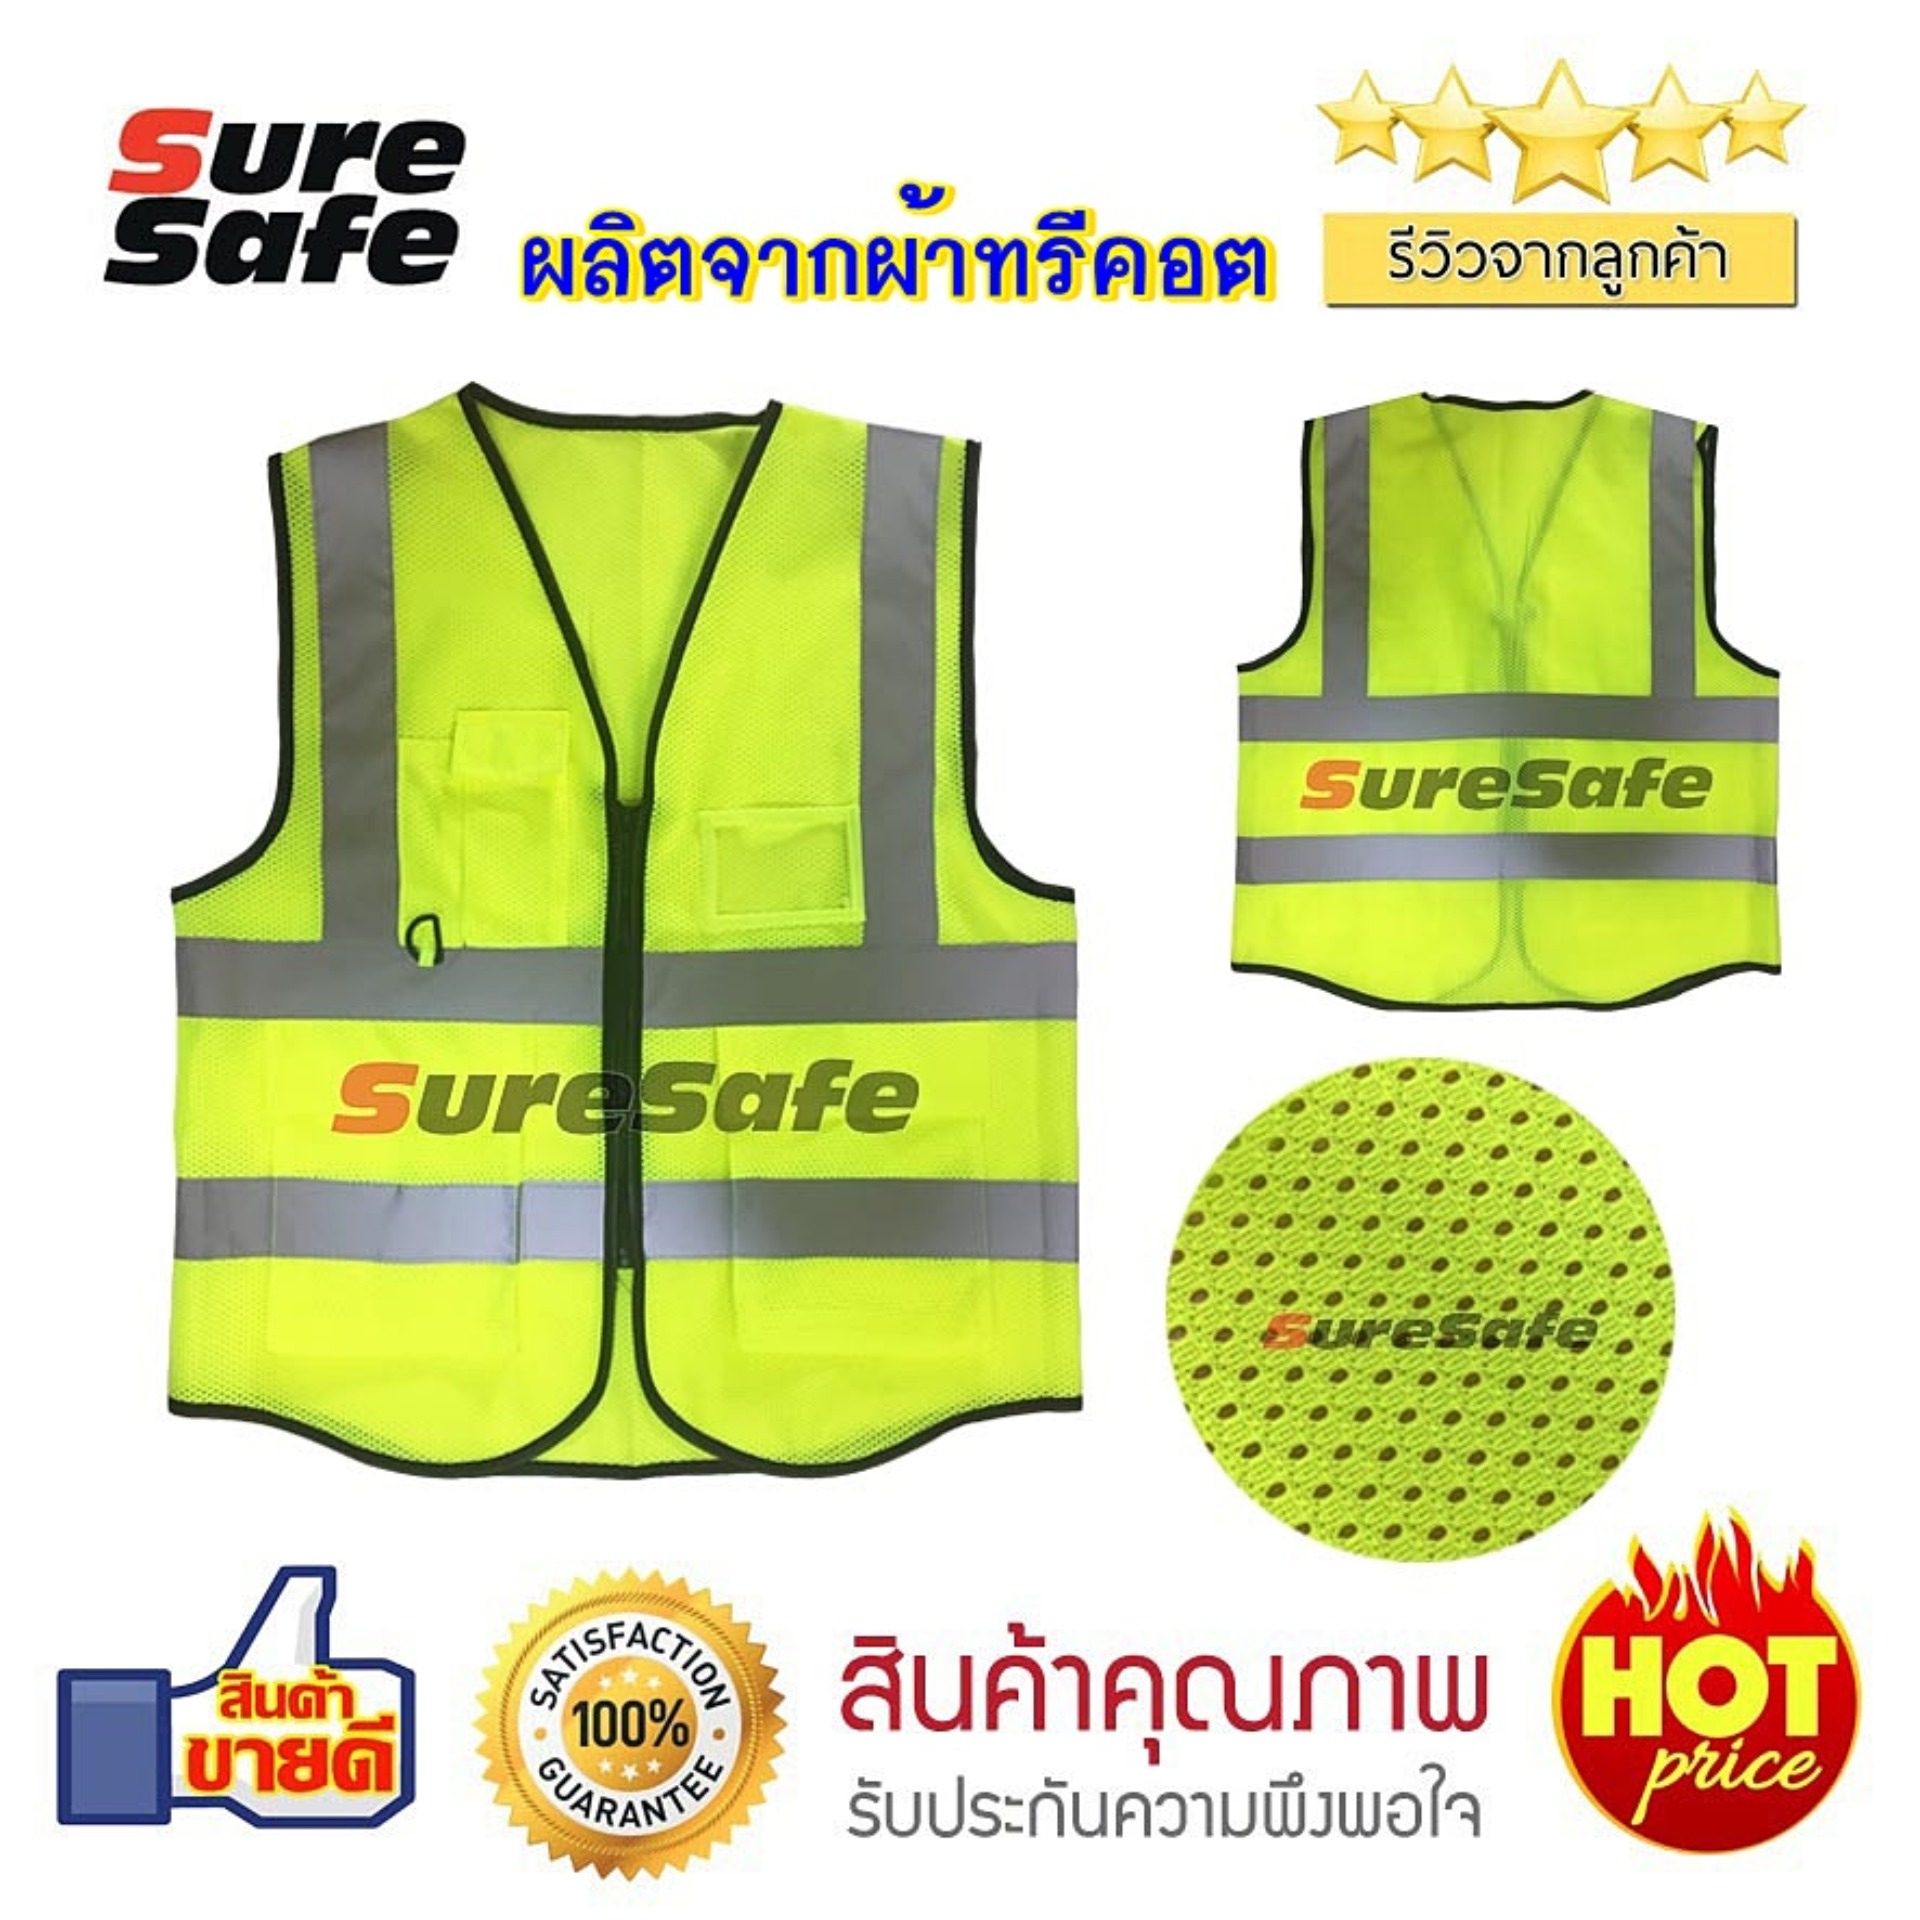 Suresafe Safety Vest เสื้อสะท้อนแสงรุ่นเต็มตัว สีเหลืองผ้าทรีคอต มีช่องเสียบบัตรและปากกา